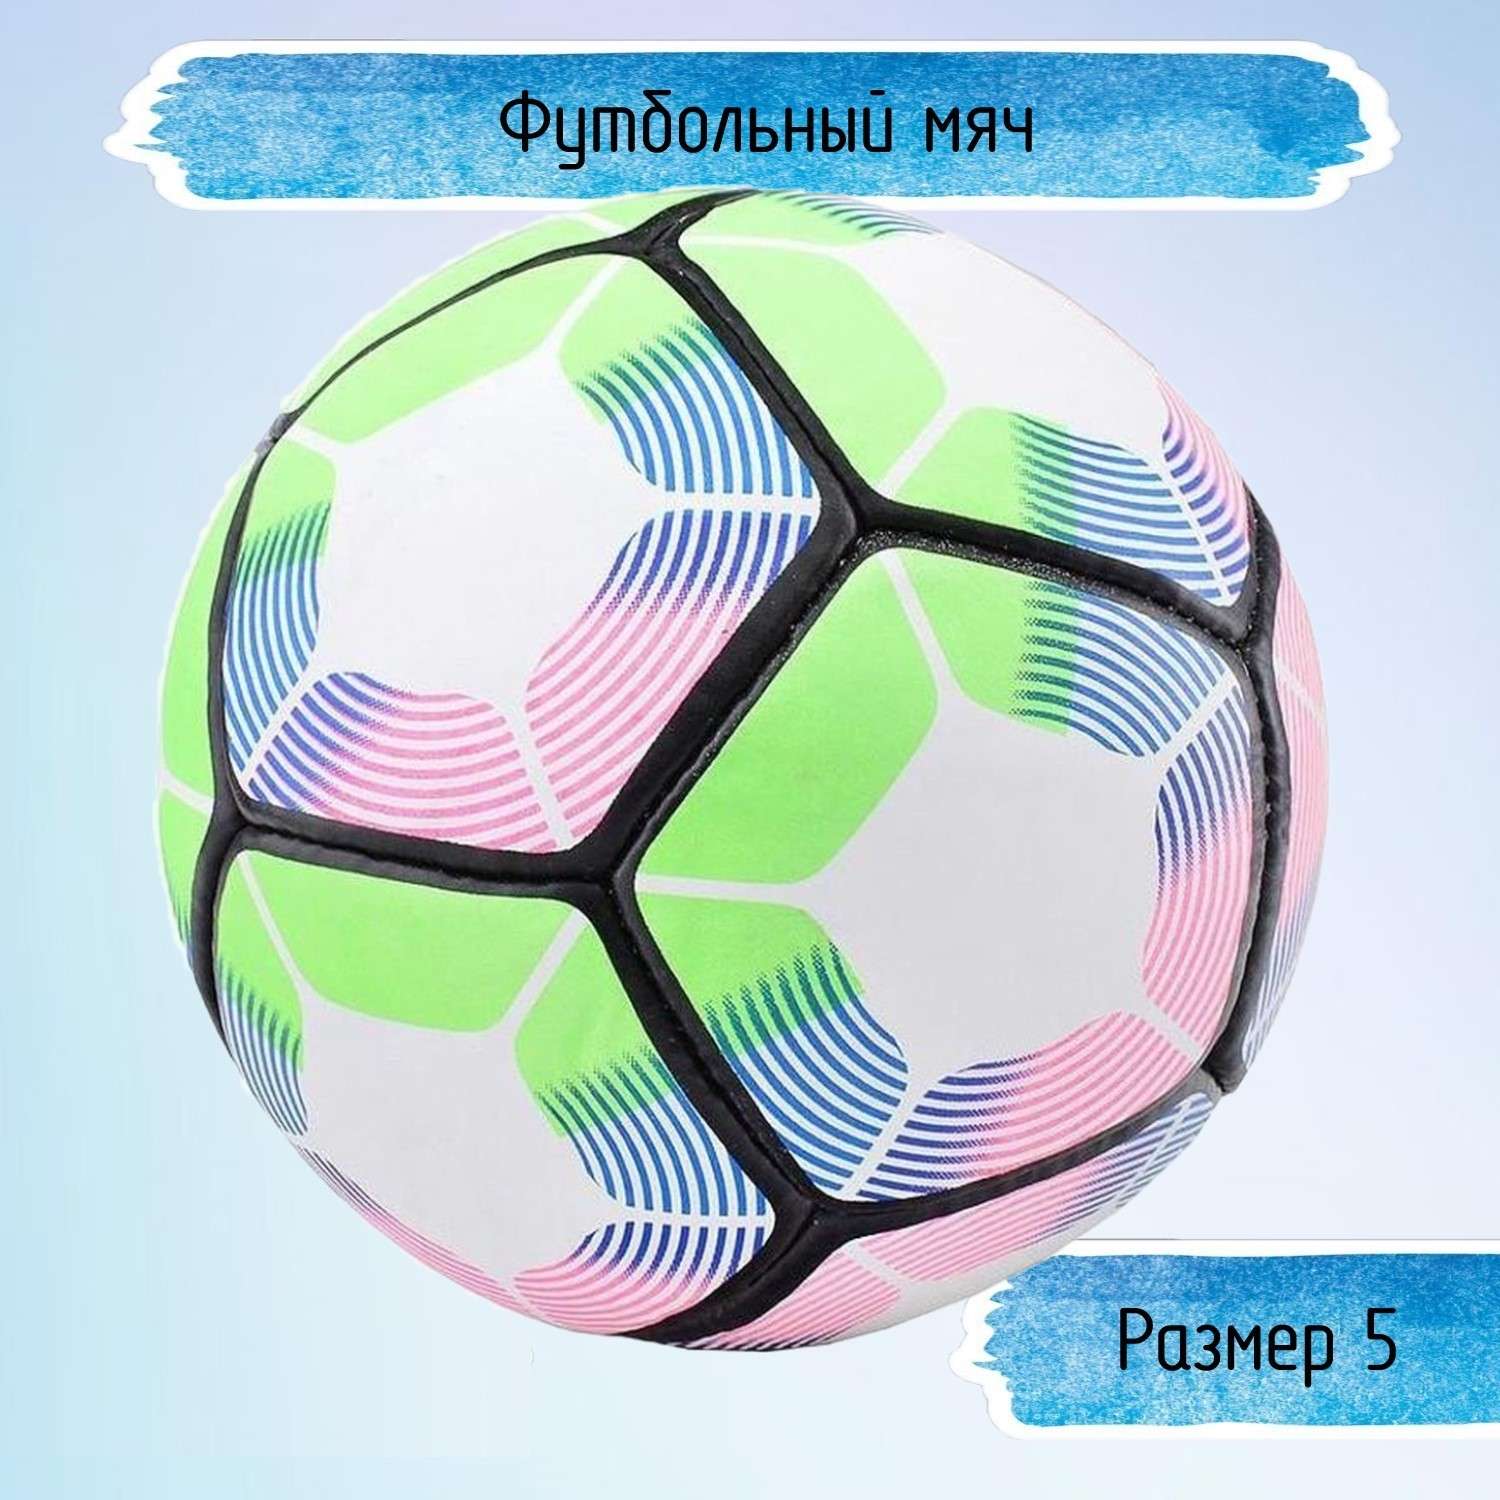 Футбольный мяч Uniglodis размер 5 - фото 1